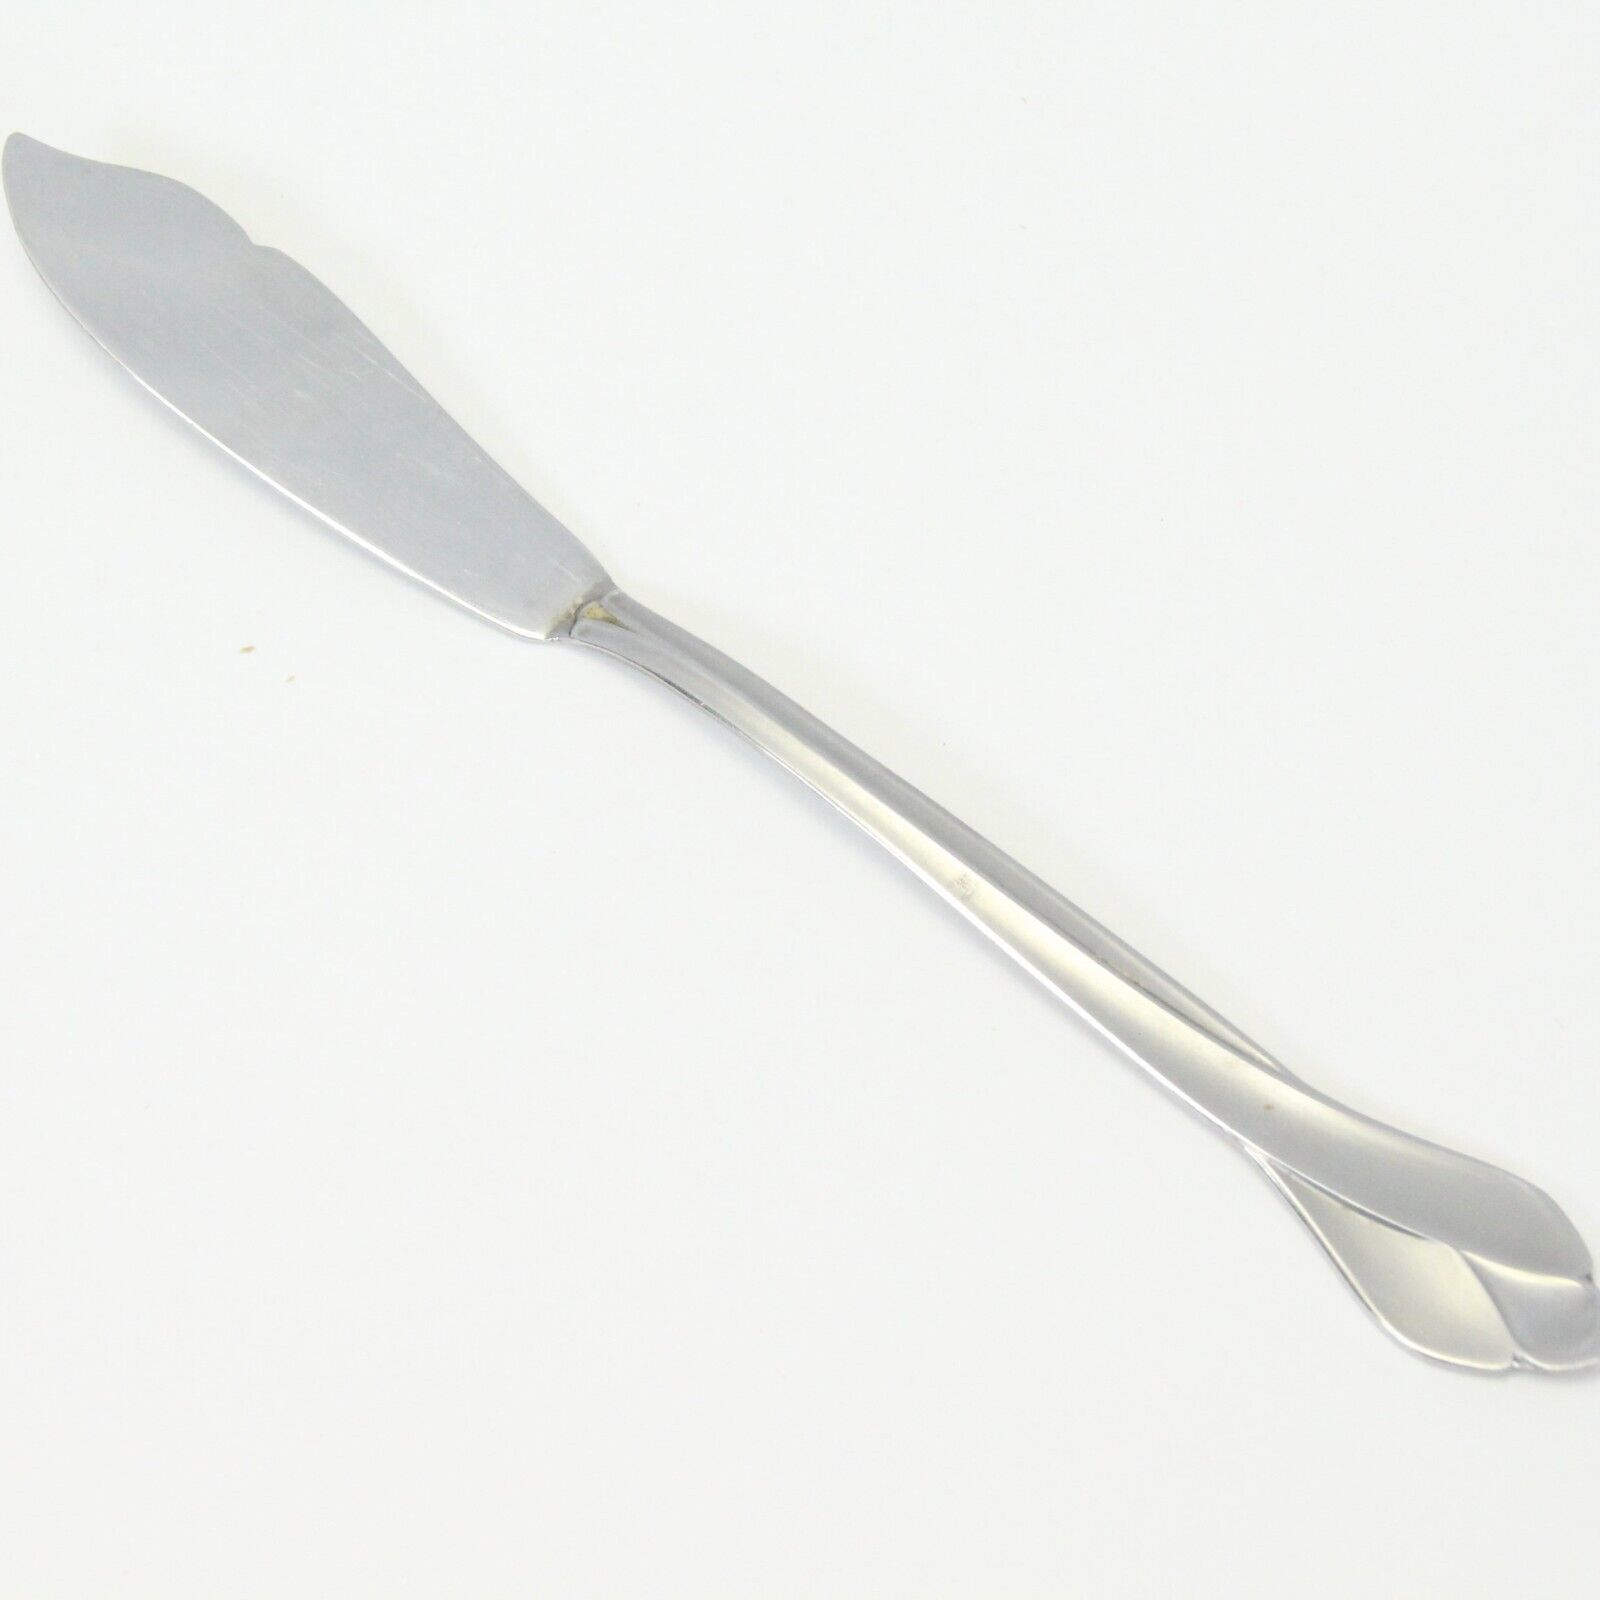 Oneida Tribeca Butter Knife 6 5/8" Stainless - $7.83